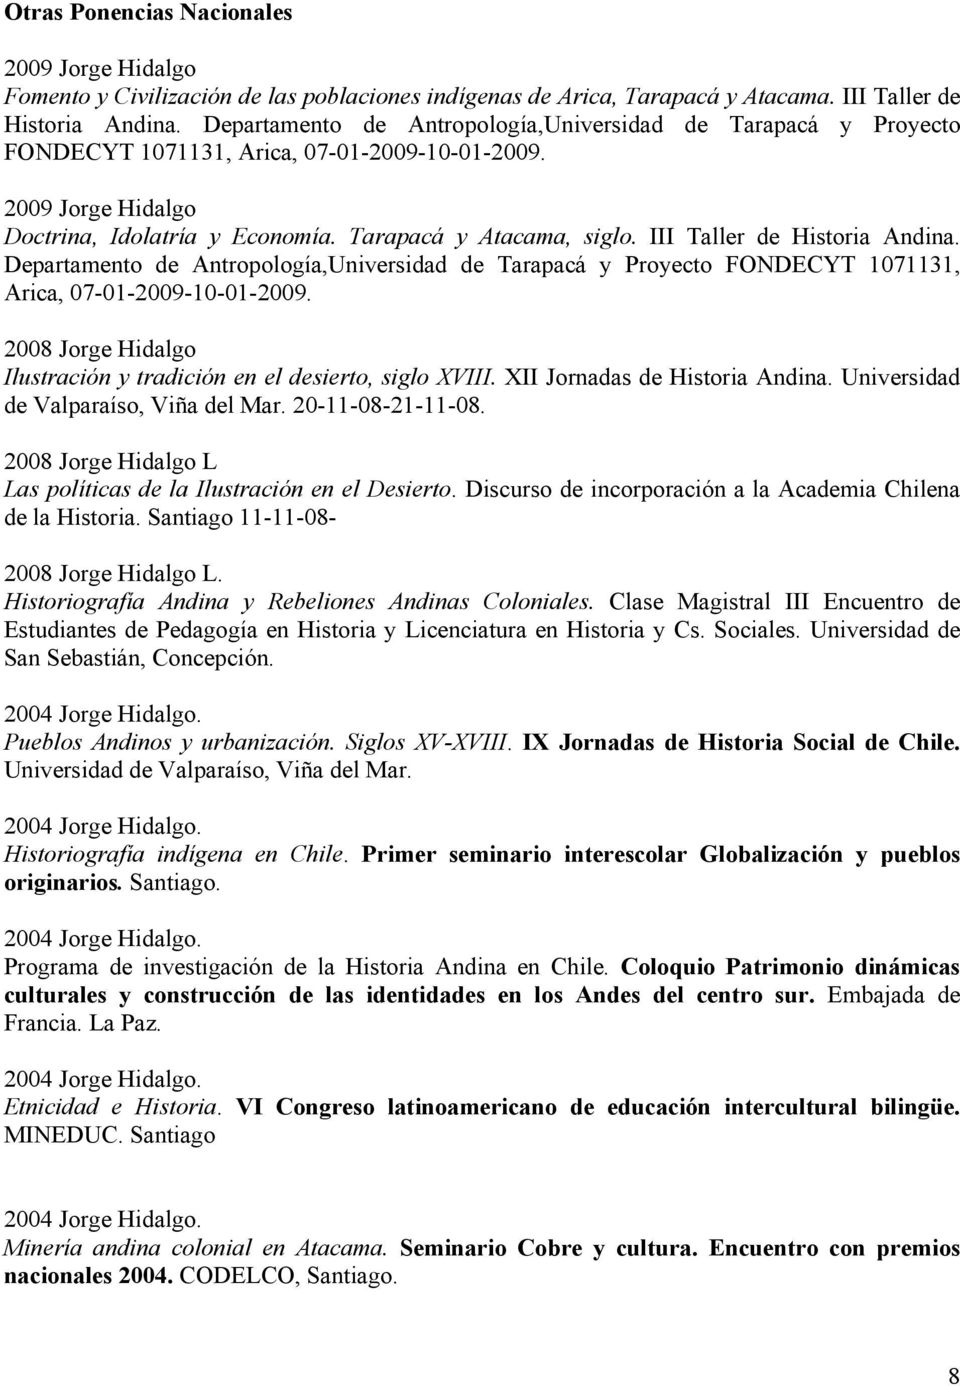 III Taller de Historia Andina. Departamento de Antropología,Universidad de Tarapacá y Proyecto FONDECYT 1071131, Arica, 07-01-2009-10-01-2009.